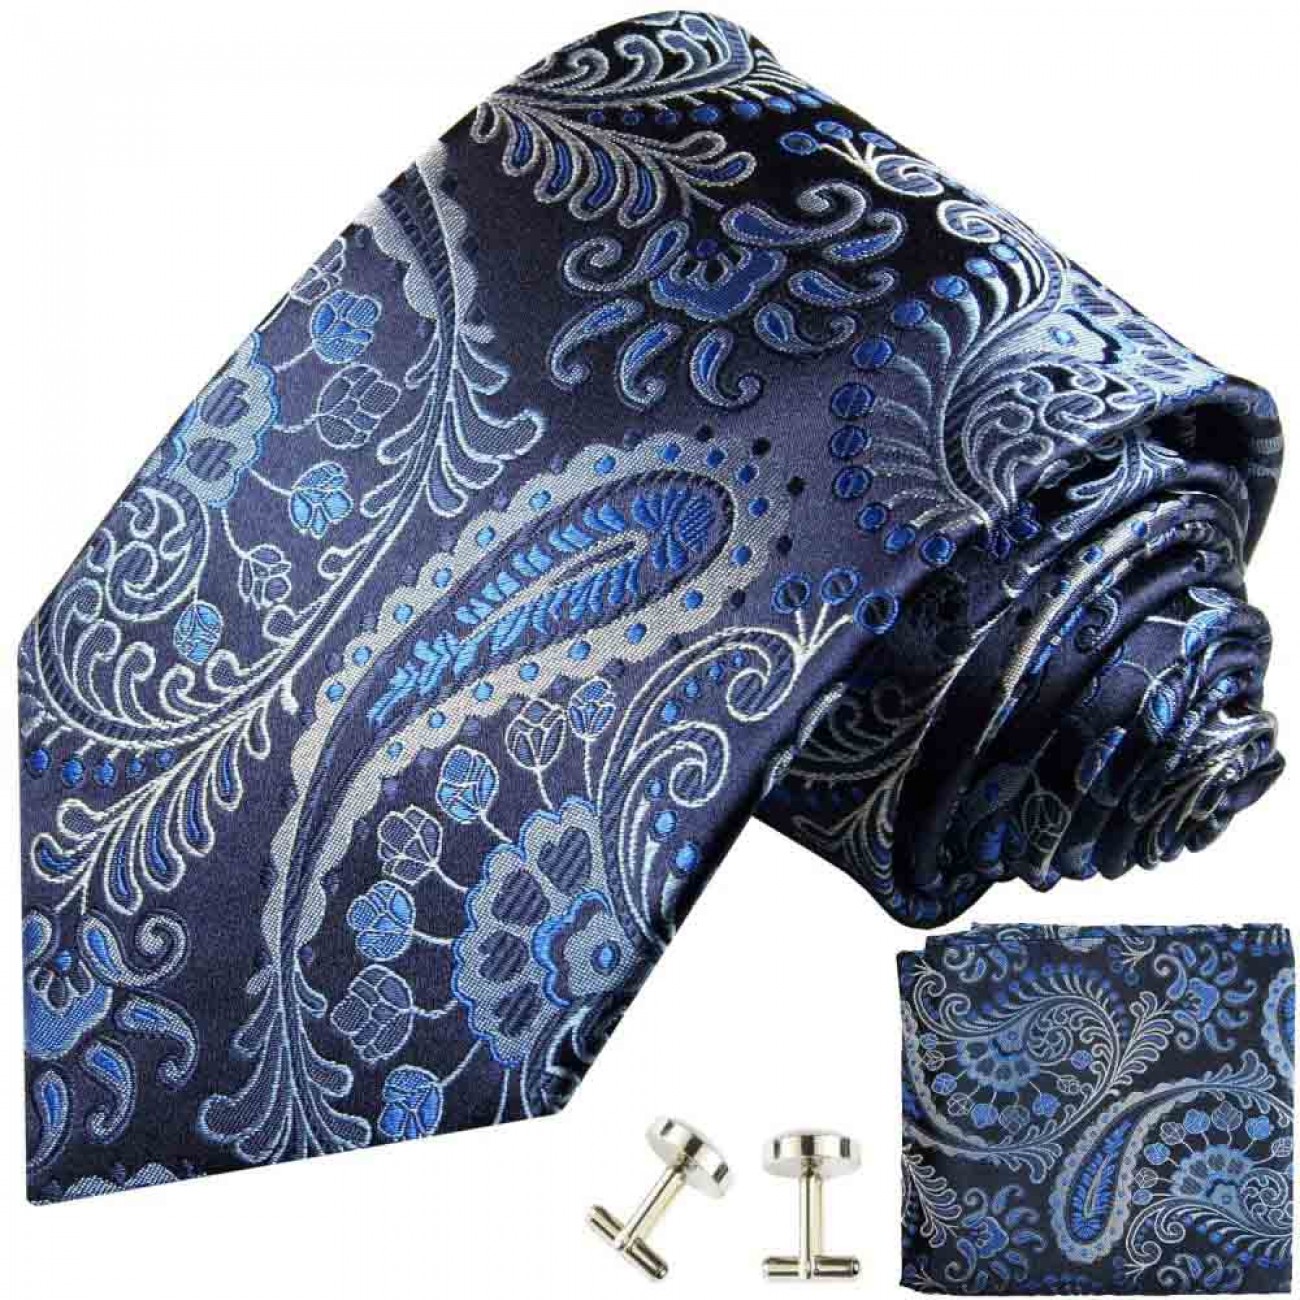 Schwarz blaues paisley Krawatten Set 551 + - Paul Shop 100% Seidenkrawatte 3tlg Malone Einstecktuch Manschettenknöpfe 